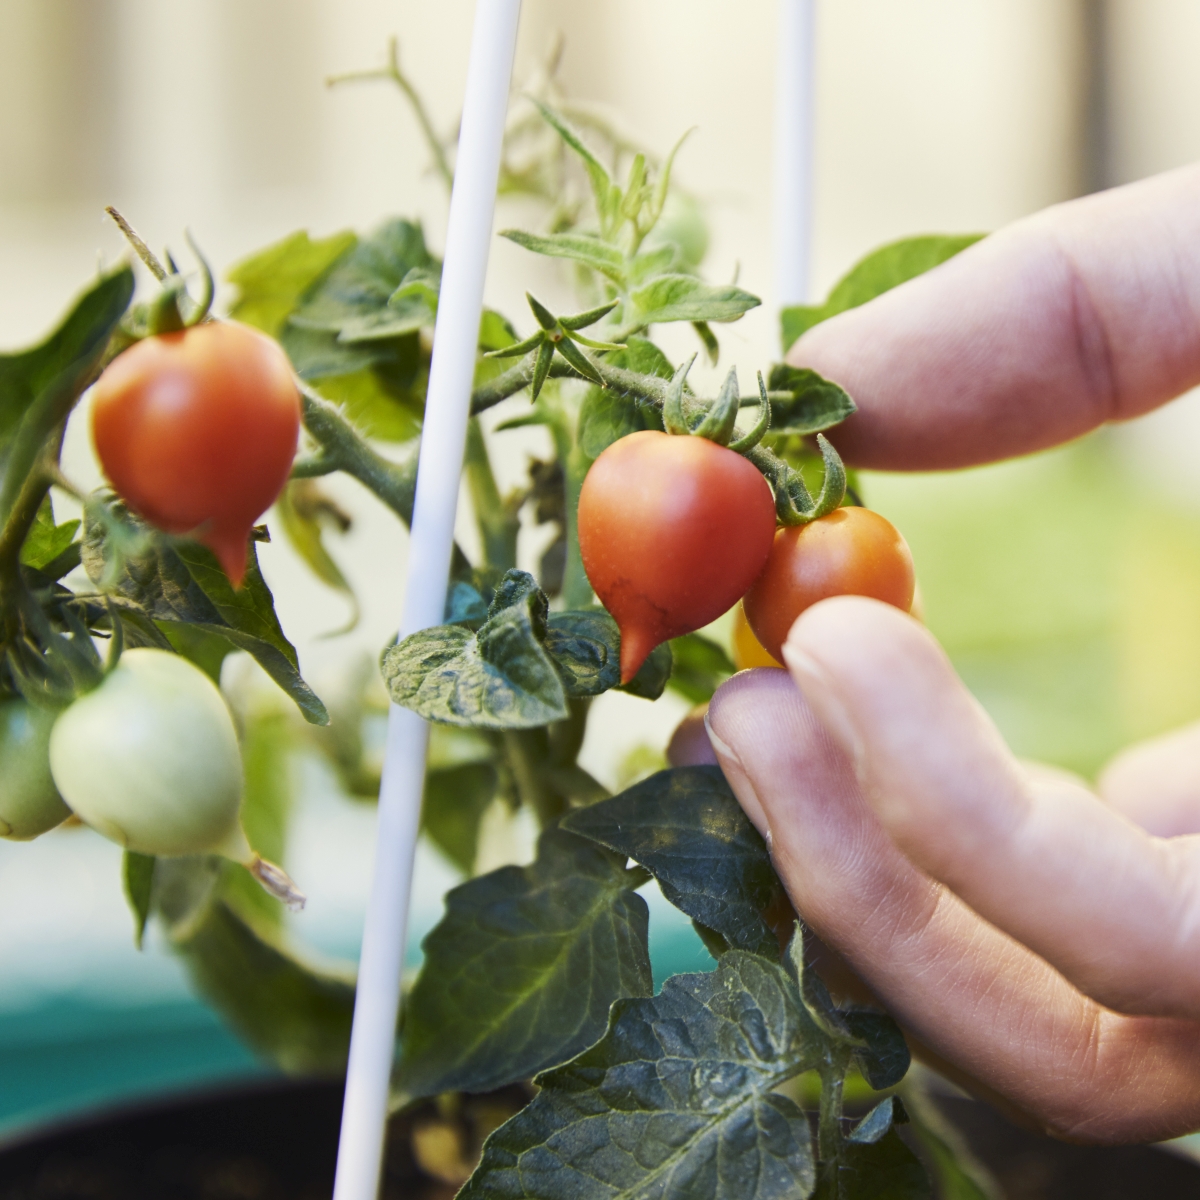 Nahaufnahme einer Tomatenpflanze. An eine der Tomaten greift eine Hand.